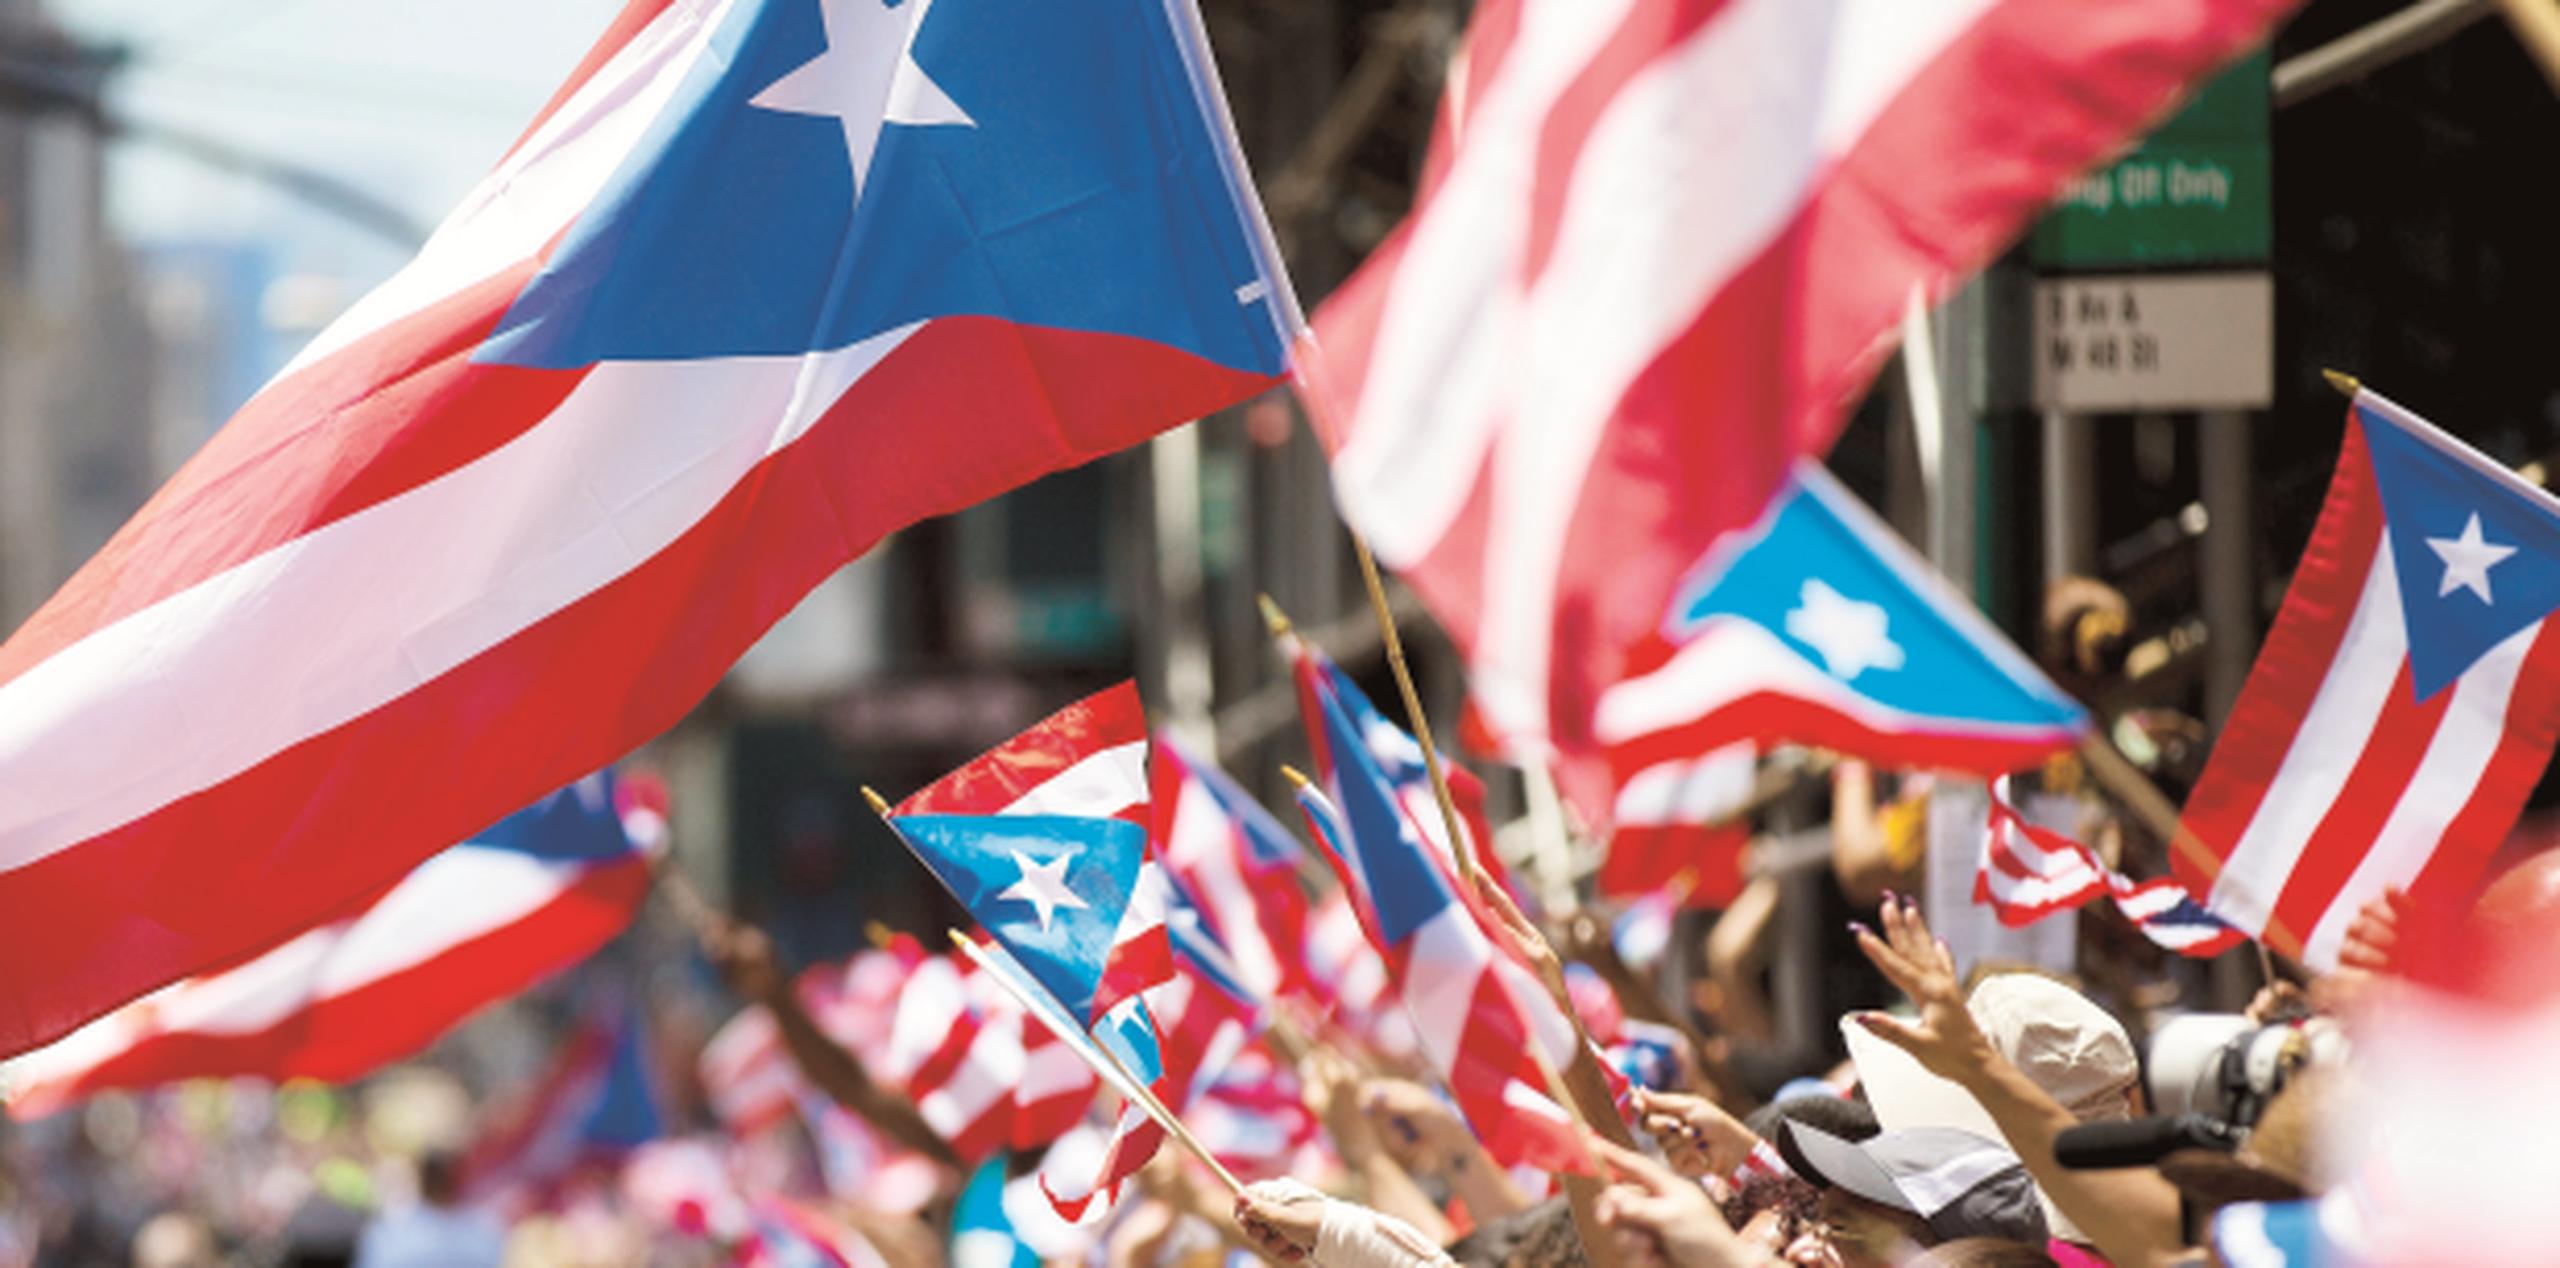 El Desfile Puertorriqueño atrae cientos de miles de personas cada año en Nueva York. (Archivo)